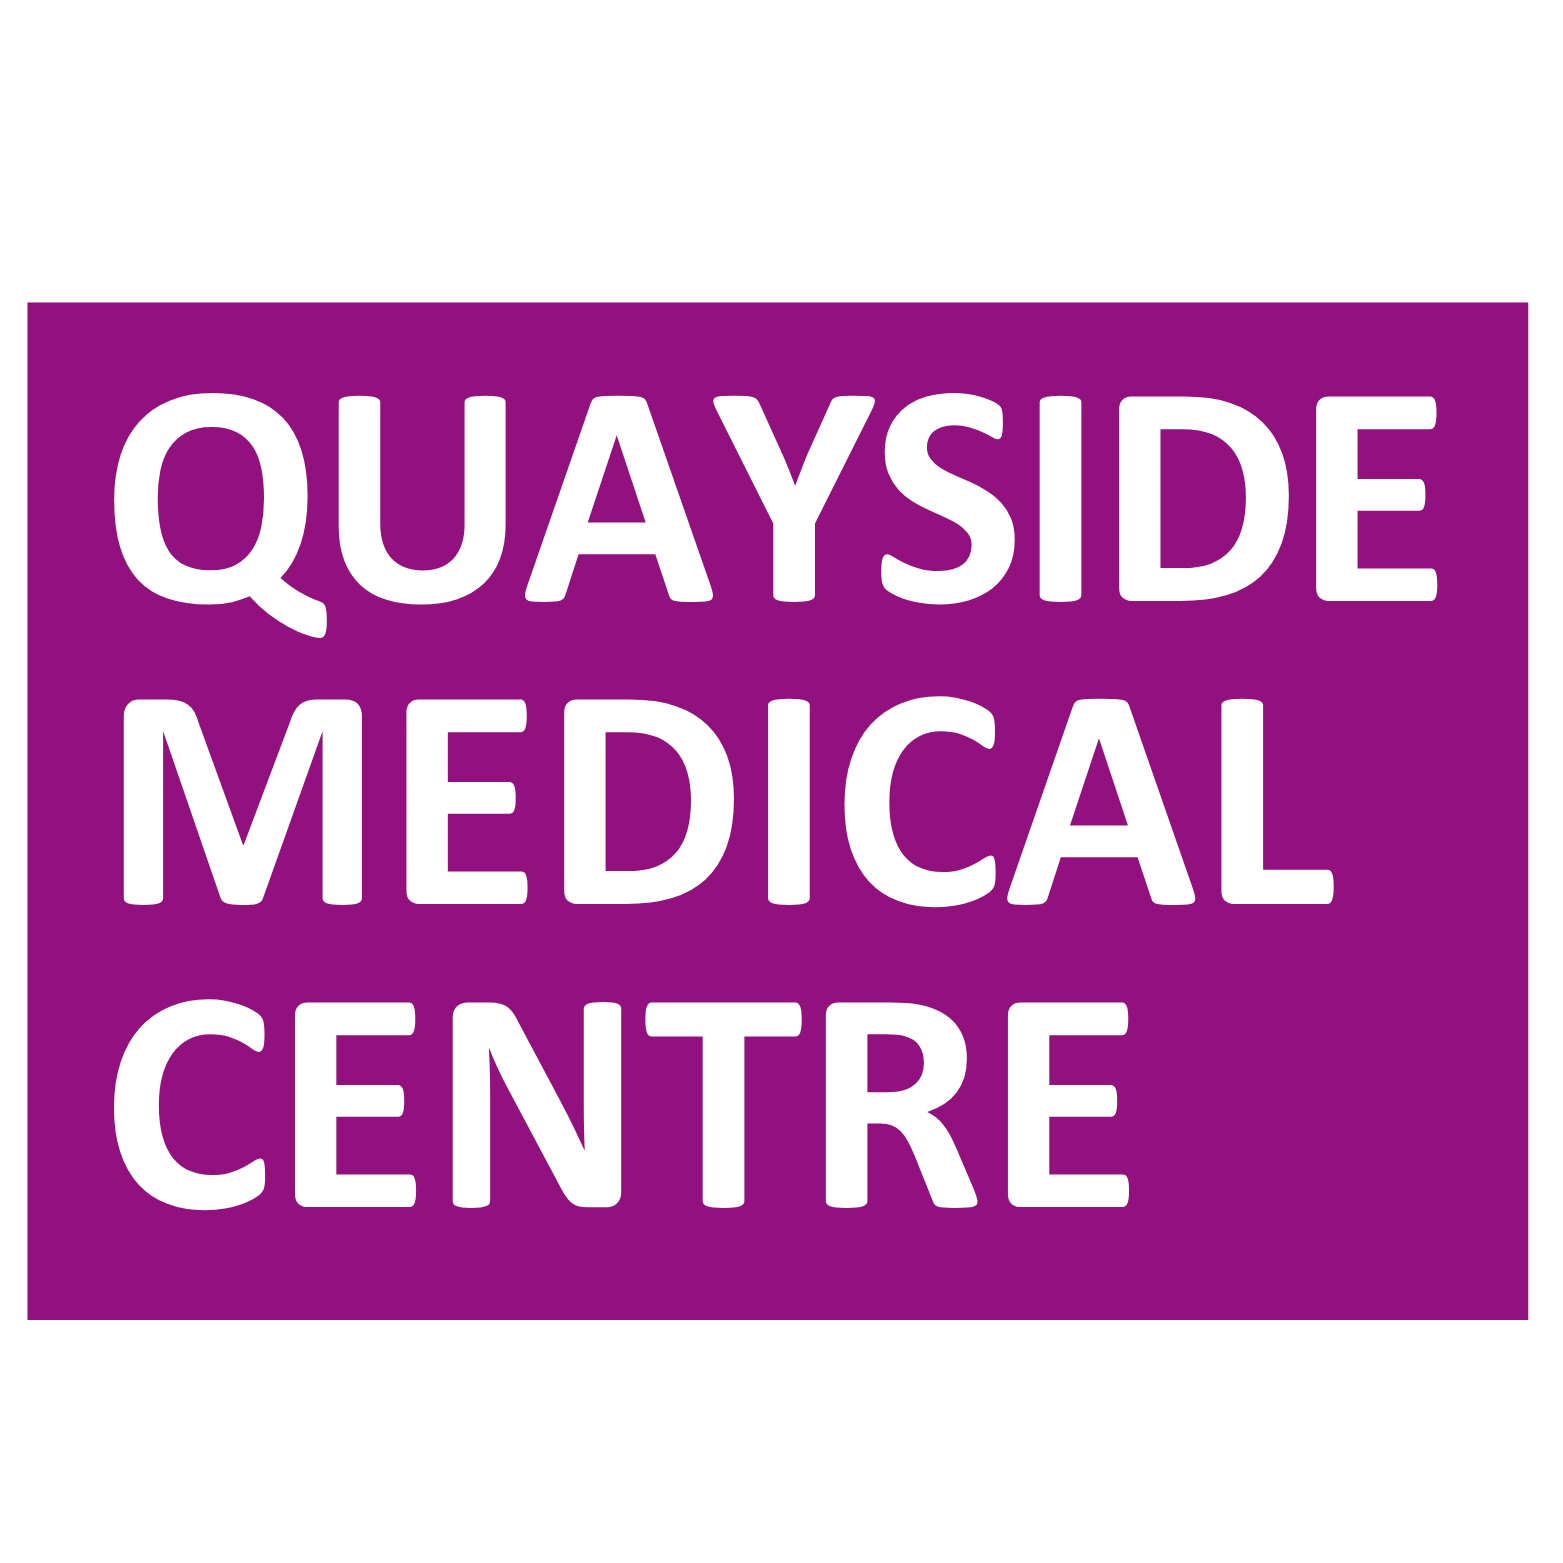 Quayside Medical Centre